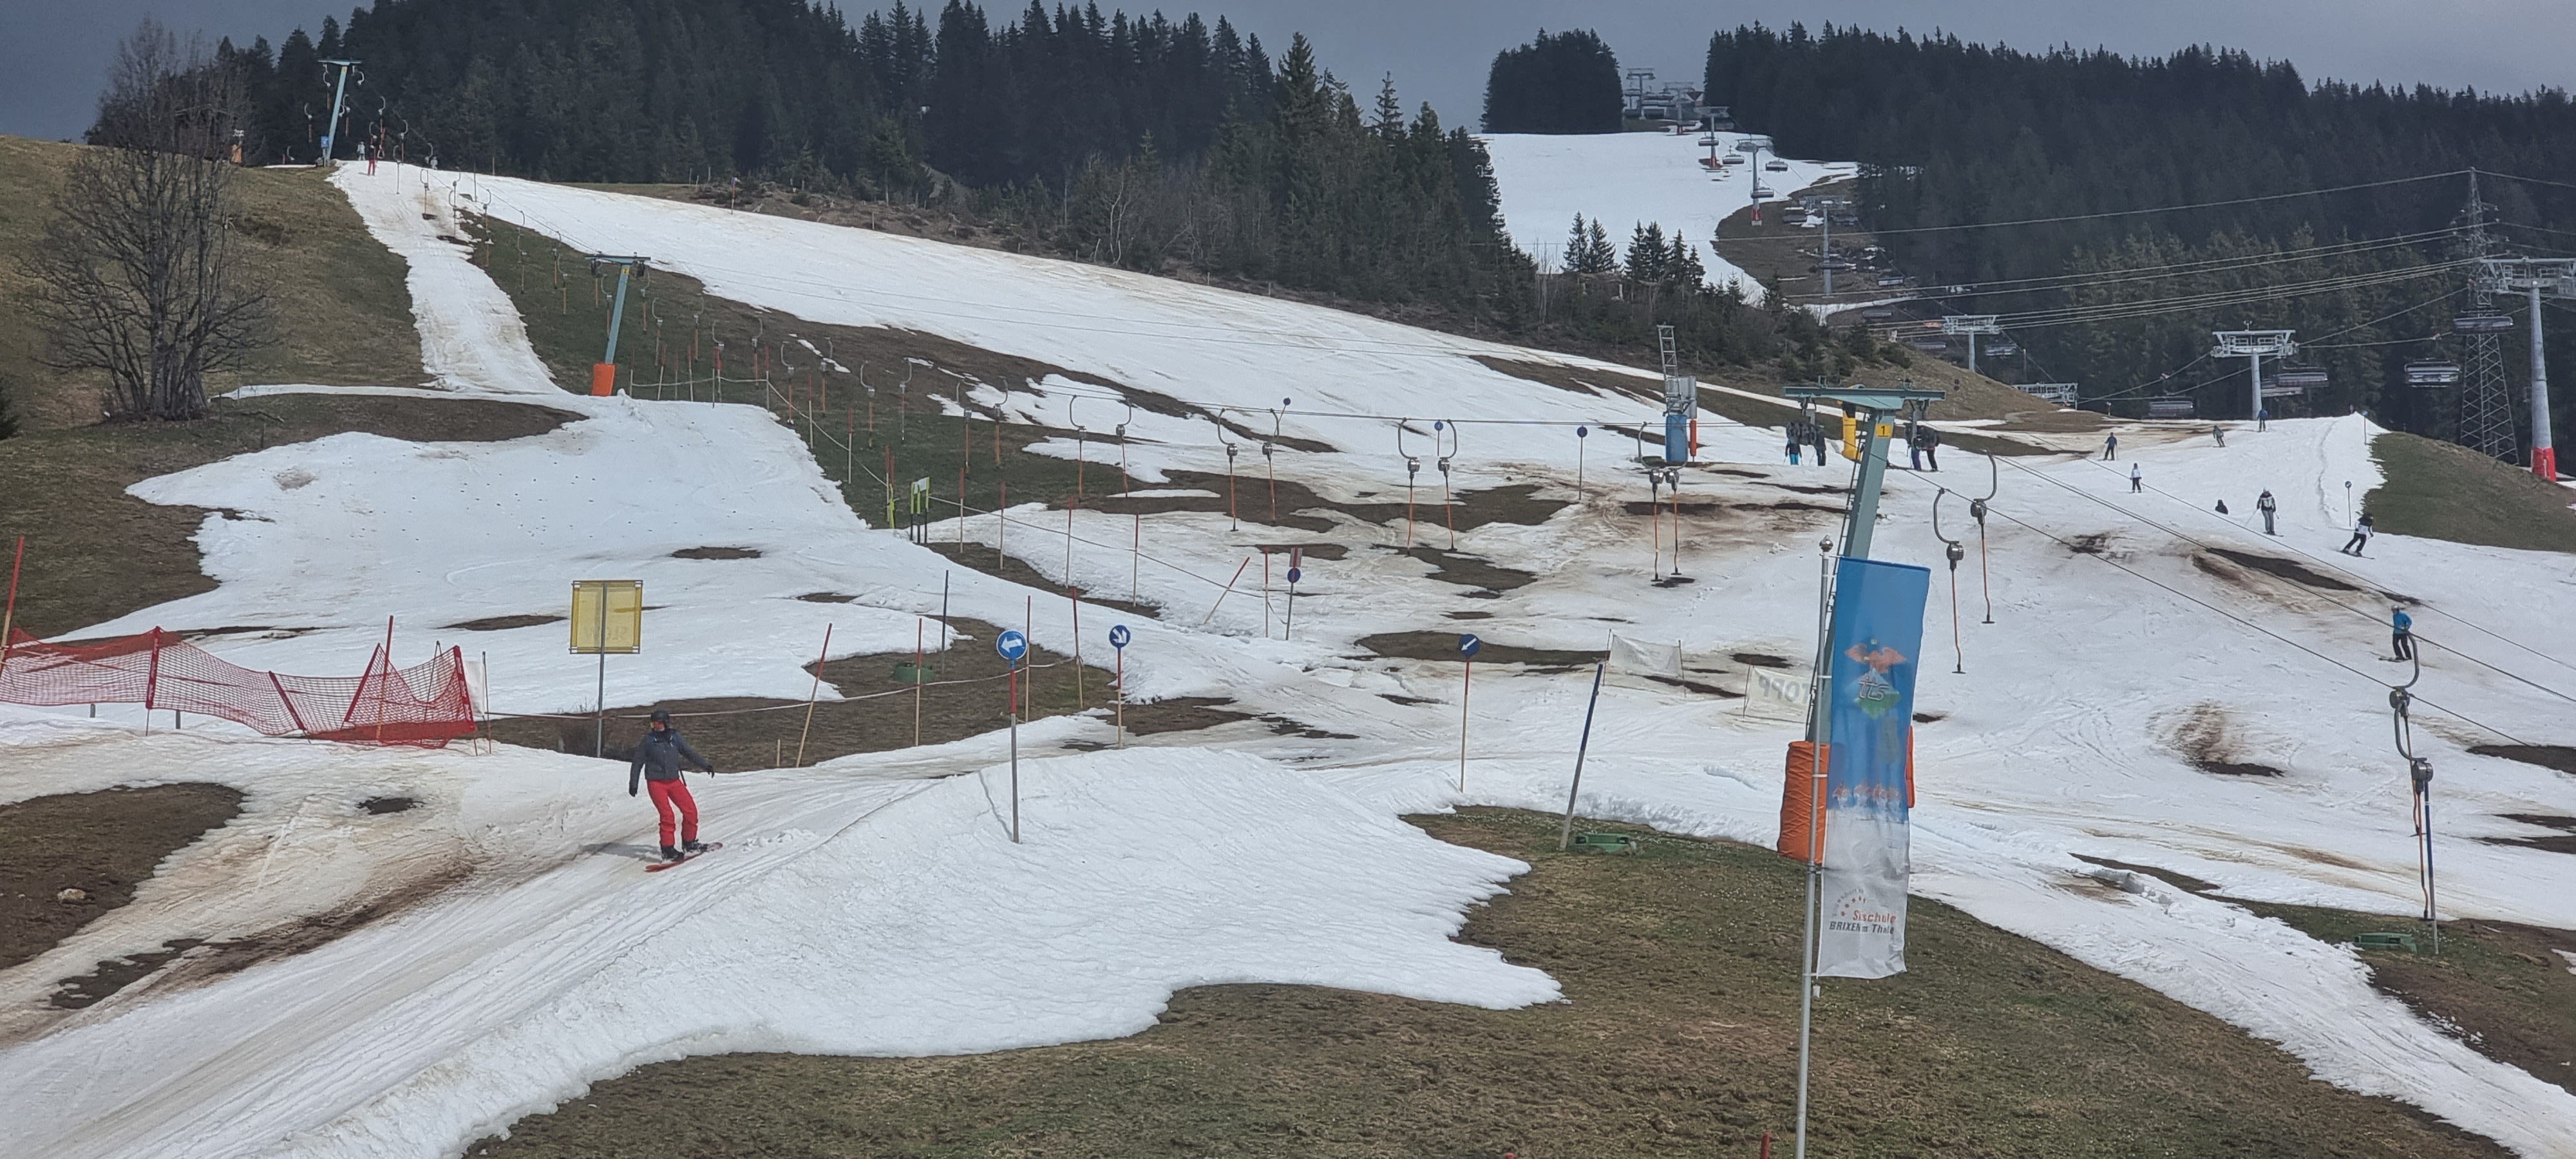 Goede sneeuwcondities, vooral lager, zijn al tijden schaars. Foto van Jeroen Elferink, Brixen im Thale, Oostenrijk. 